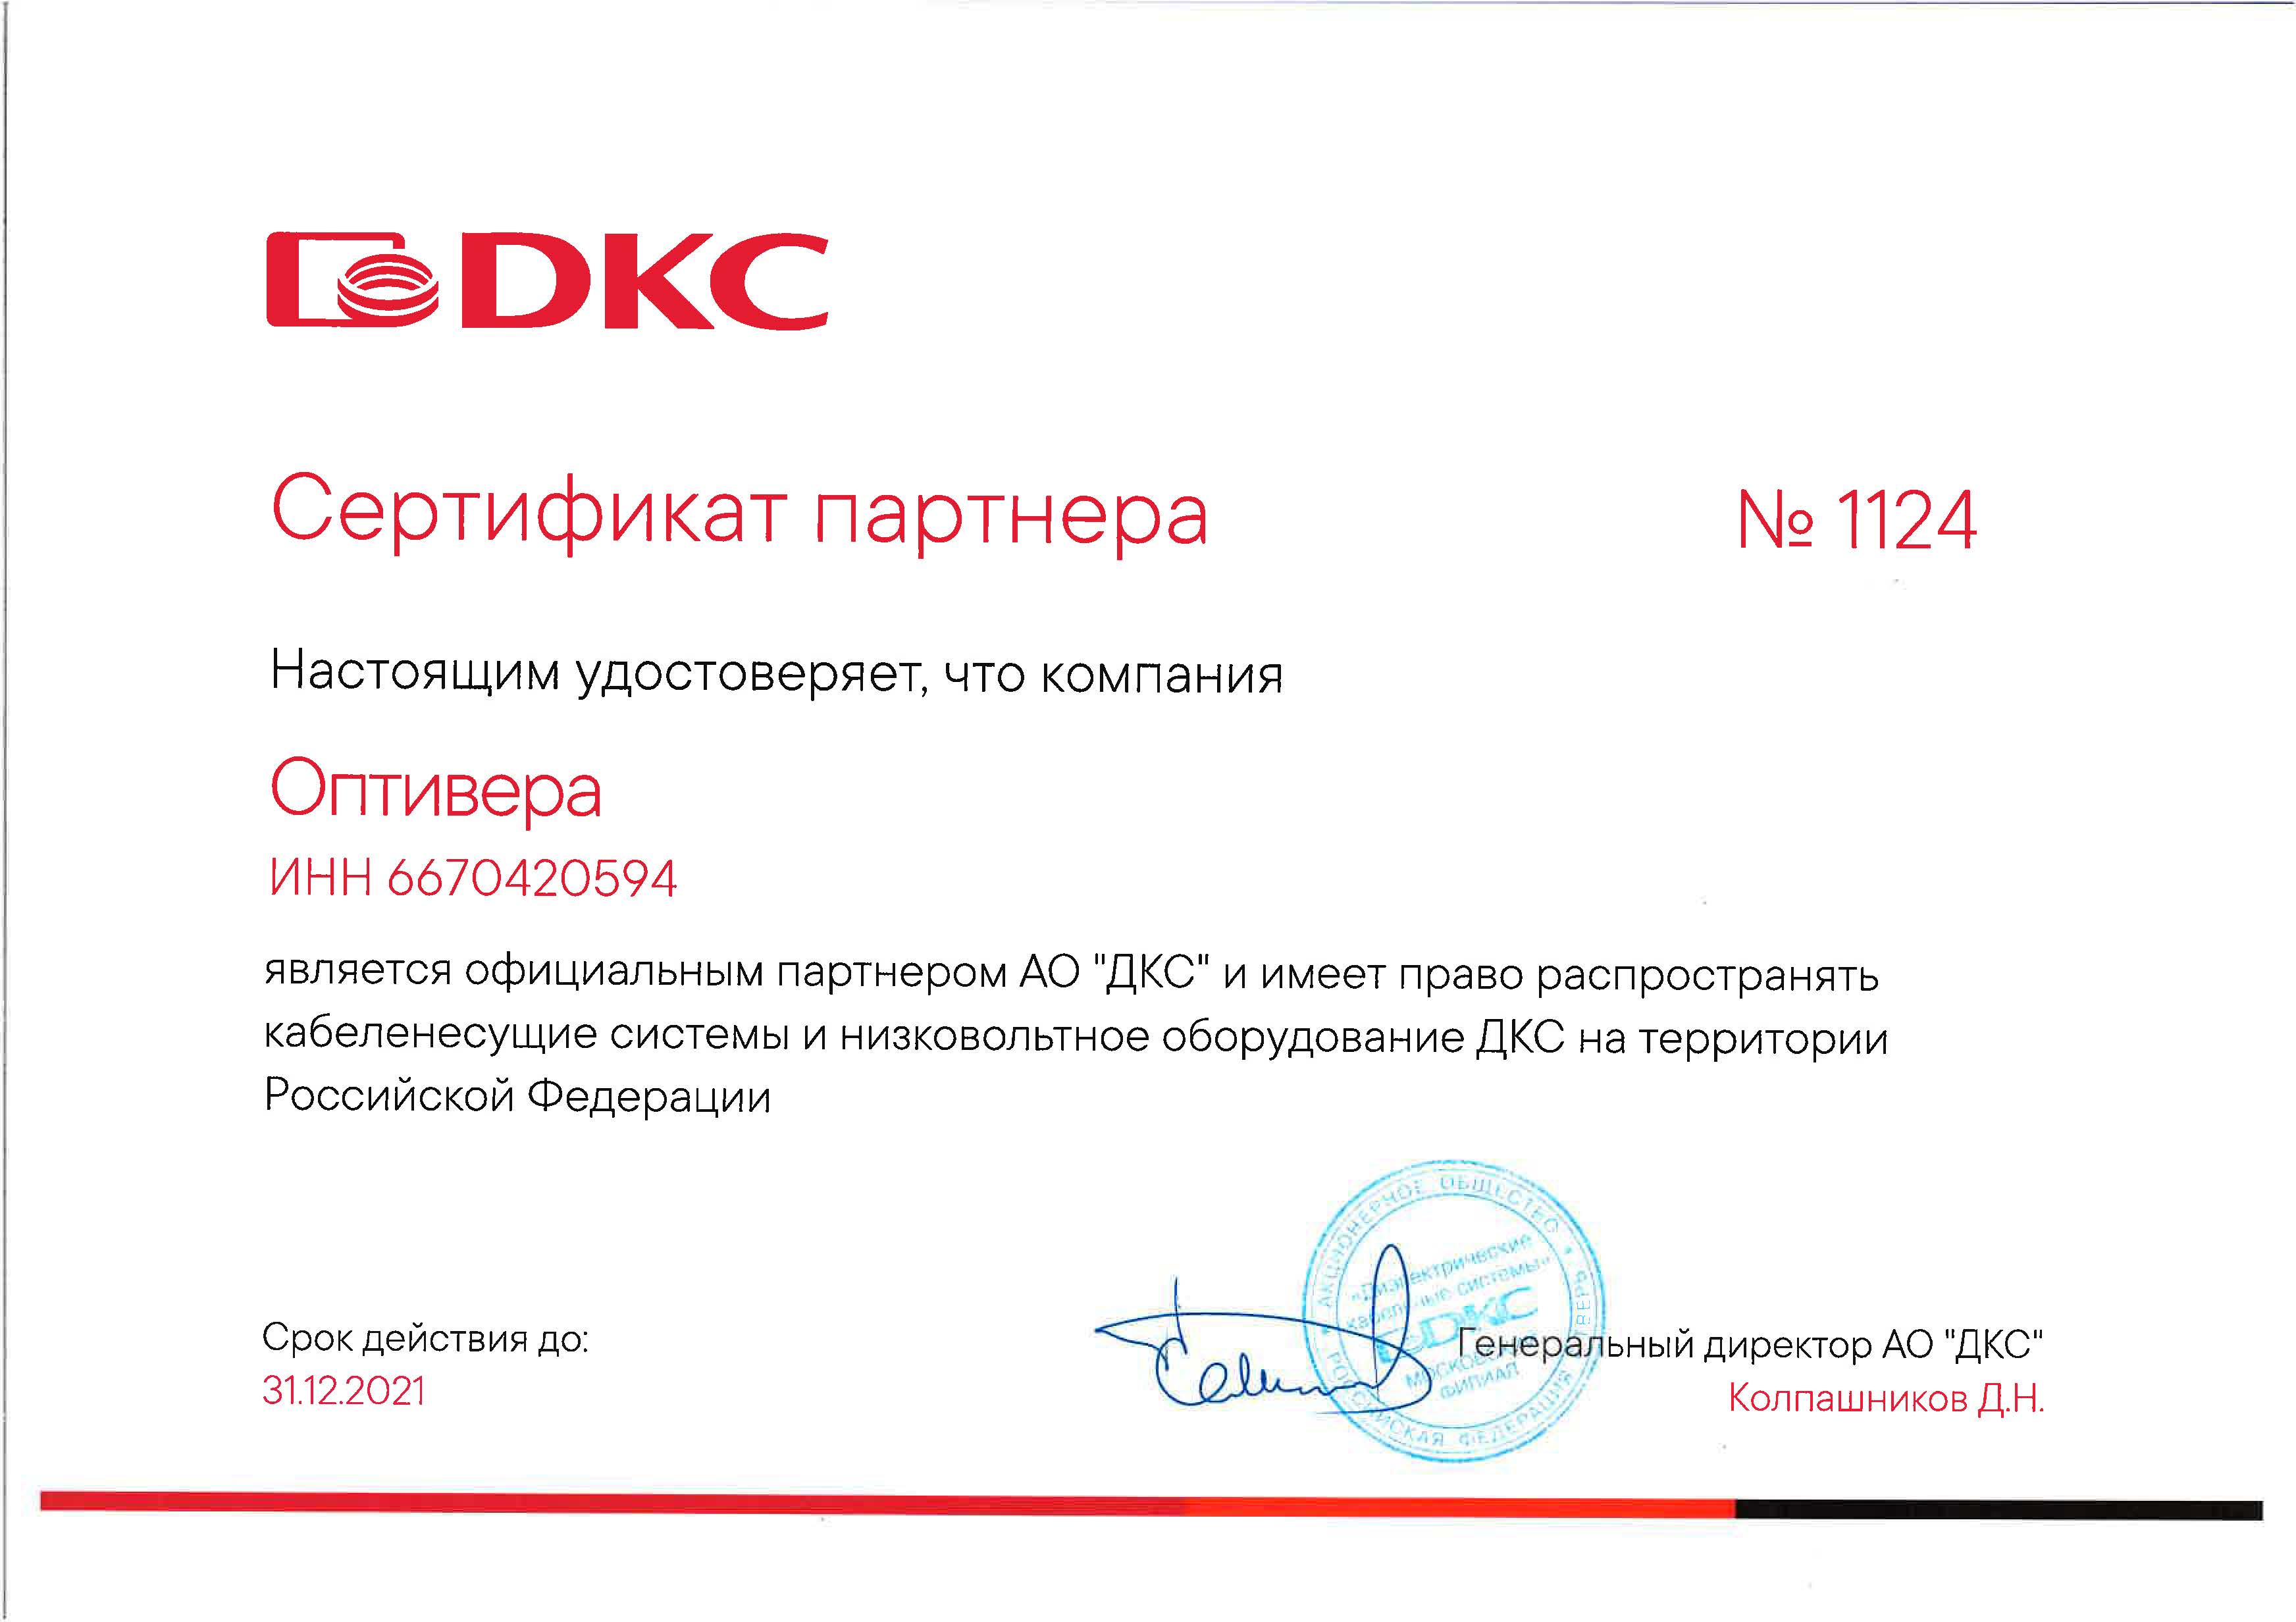 Оптивера продлила партнерский статус  DKC